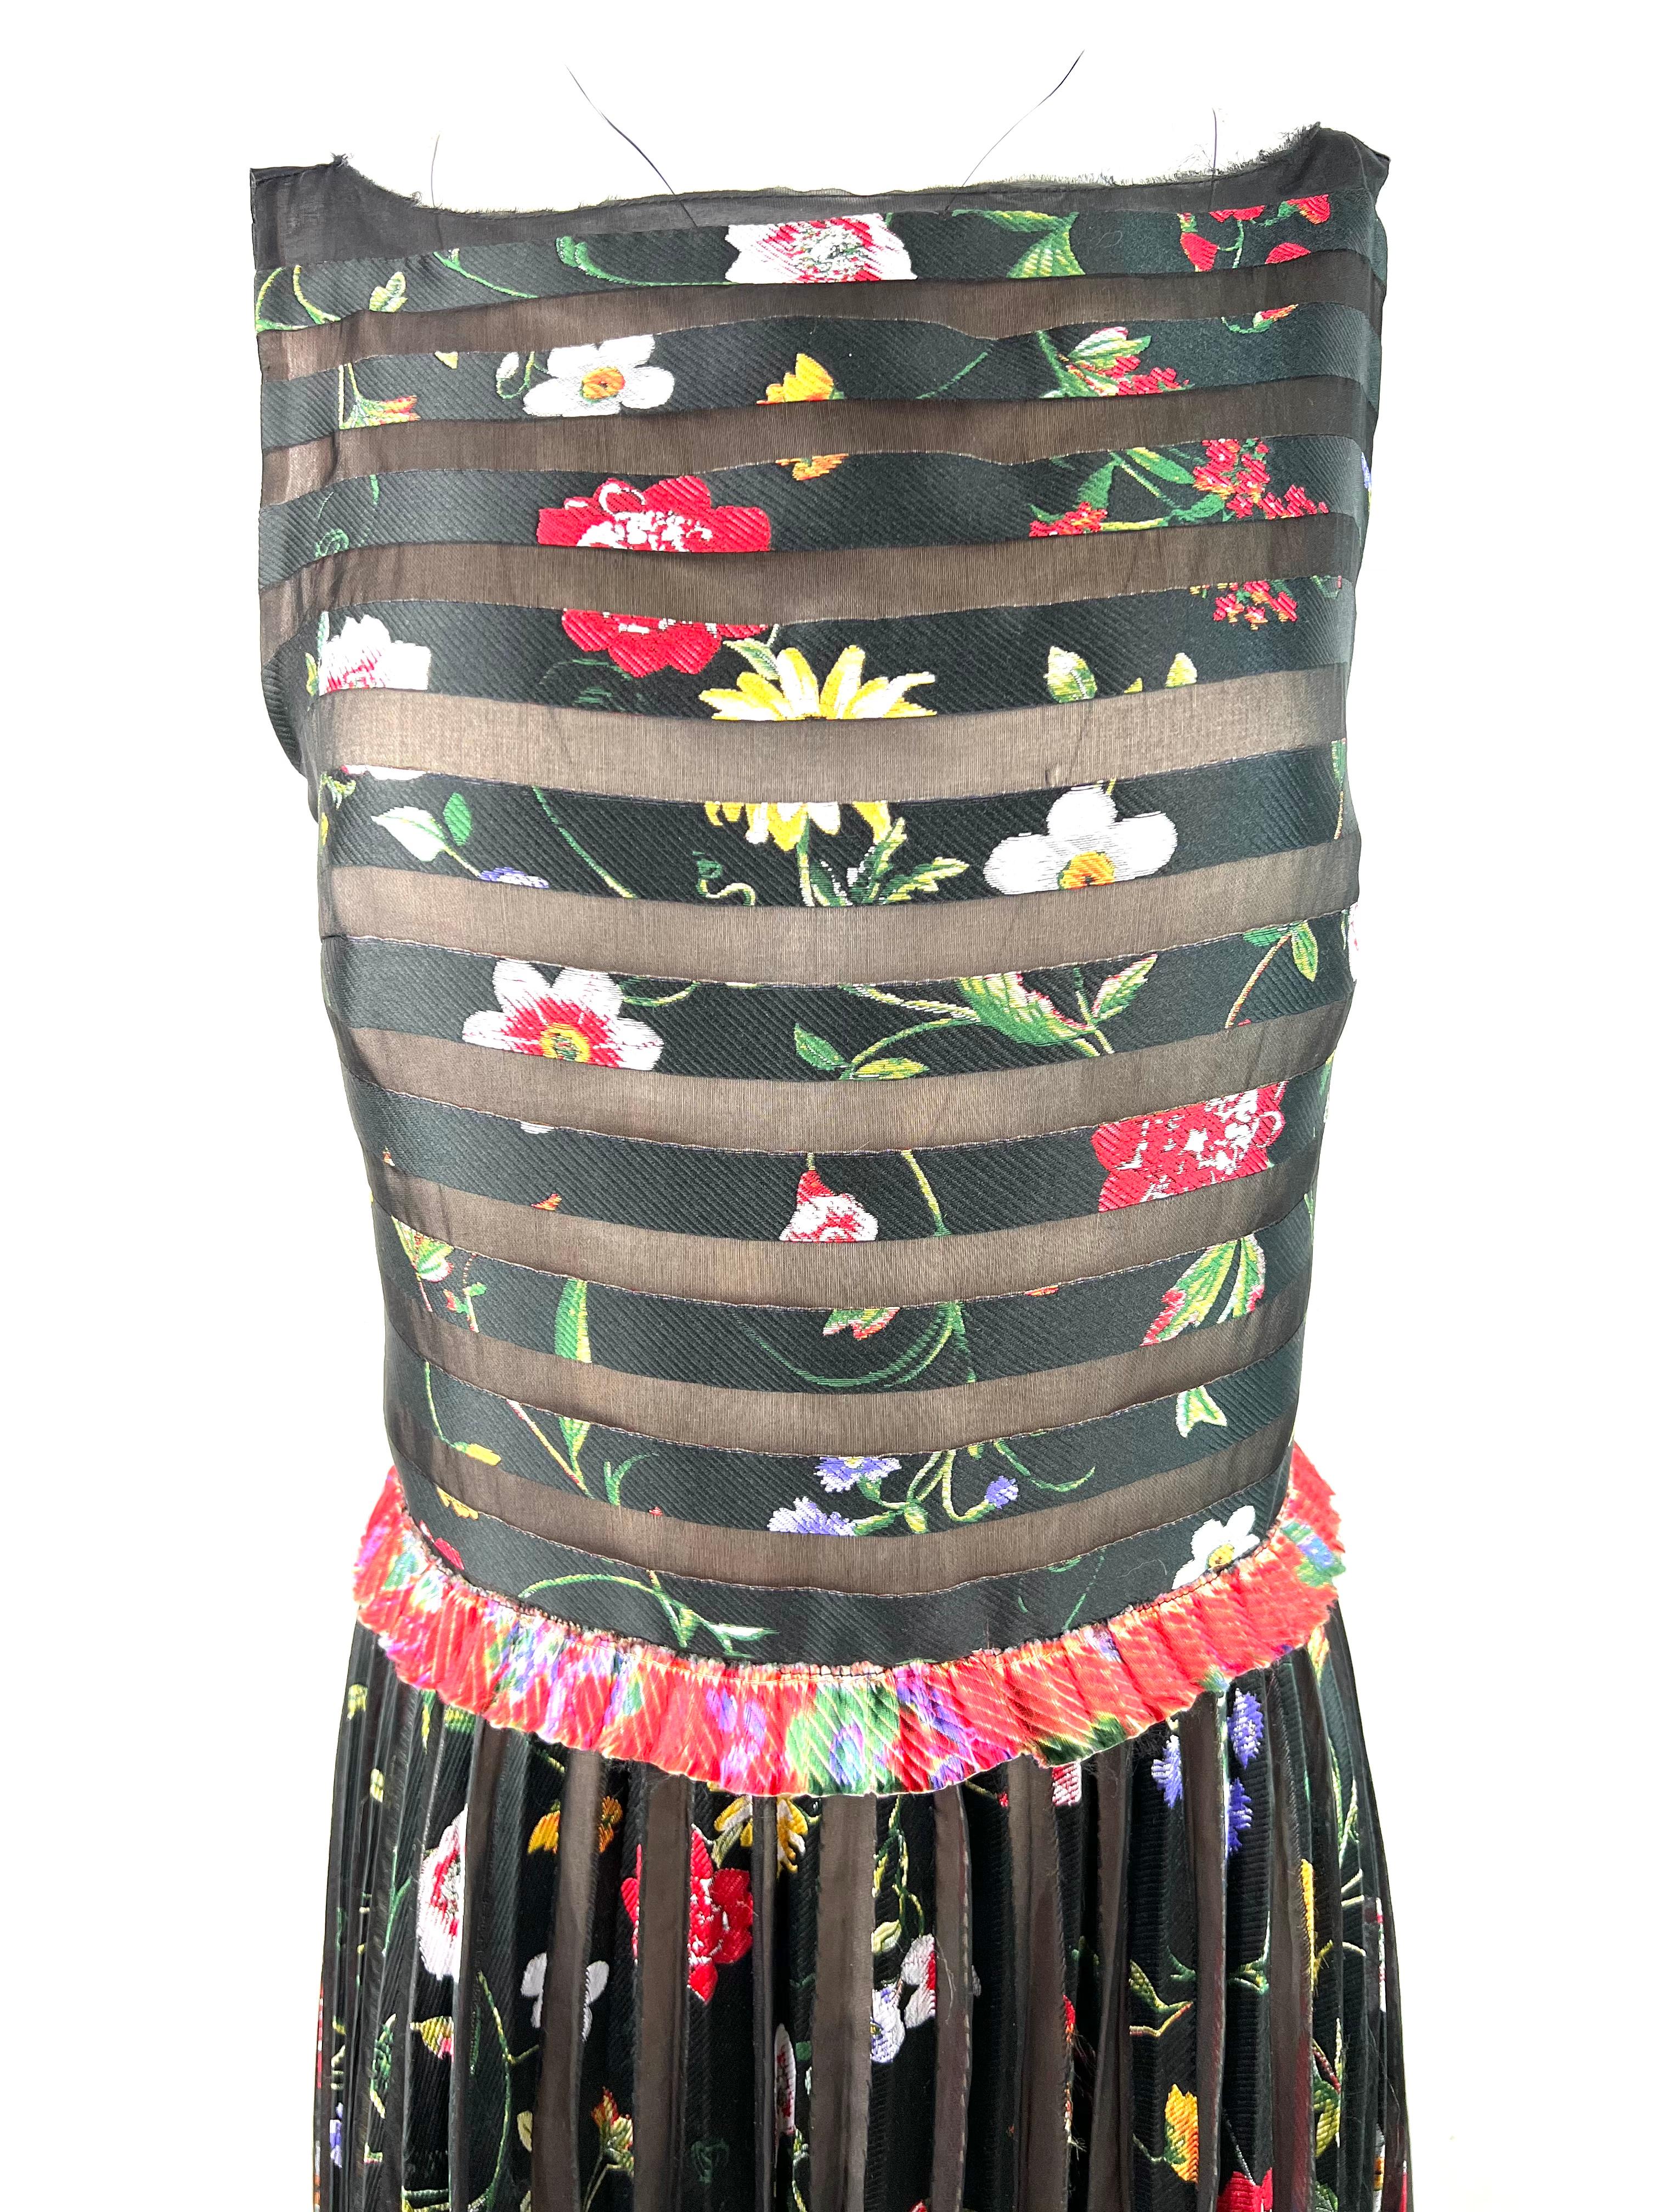 Einzelheiten zum Produkt:

Das Kleid hat einen ärmellosen Stil mit mehrfarbigem Blumen- und Streifenmuster und ist bodenlang.